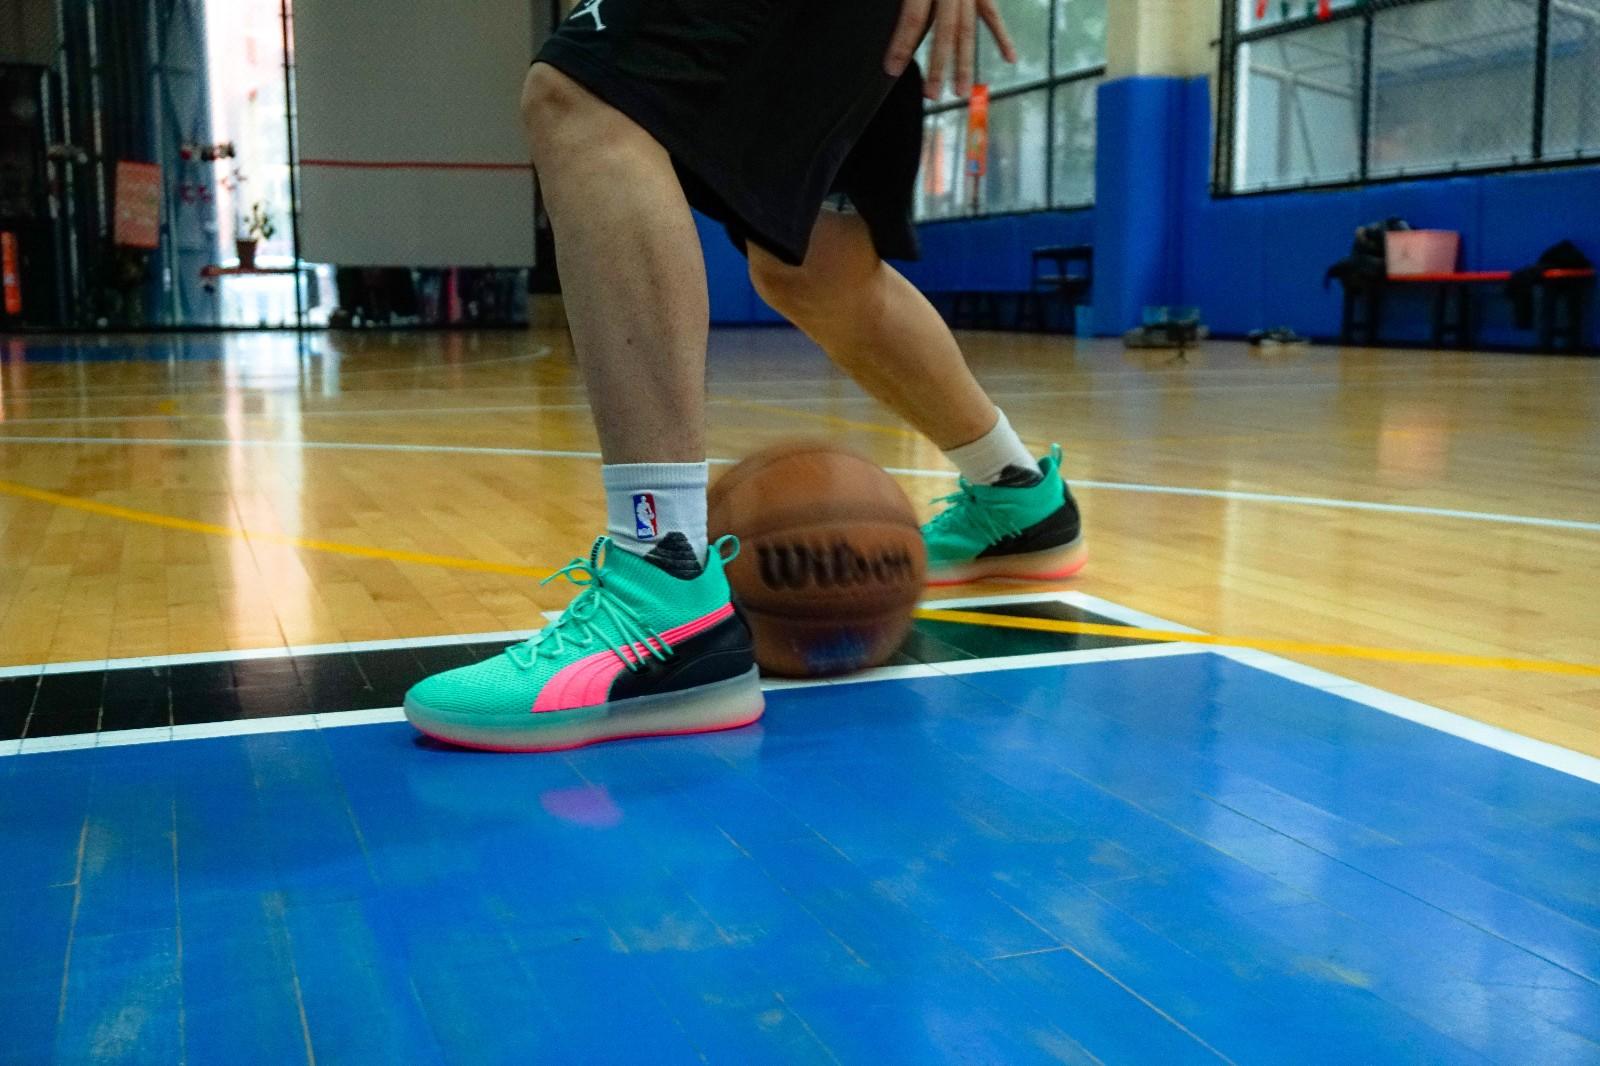 puma basketball shoes on feet